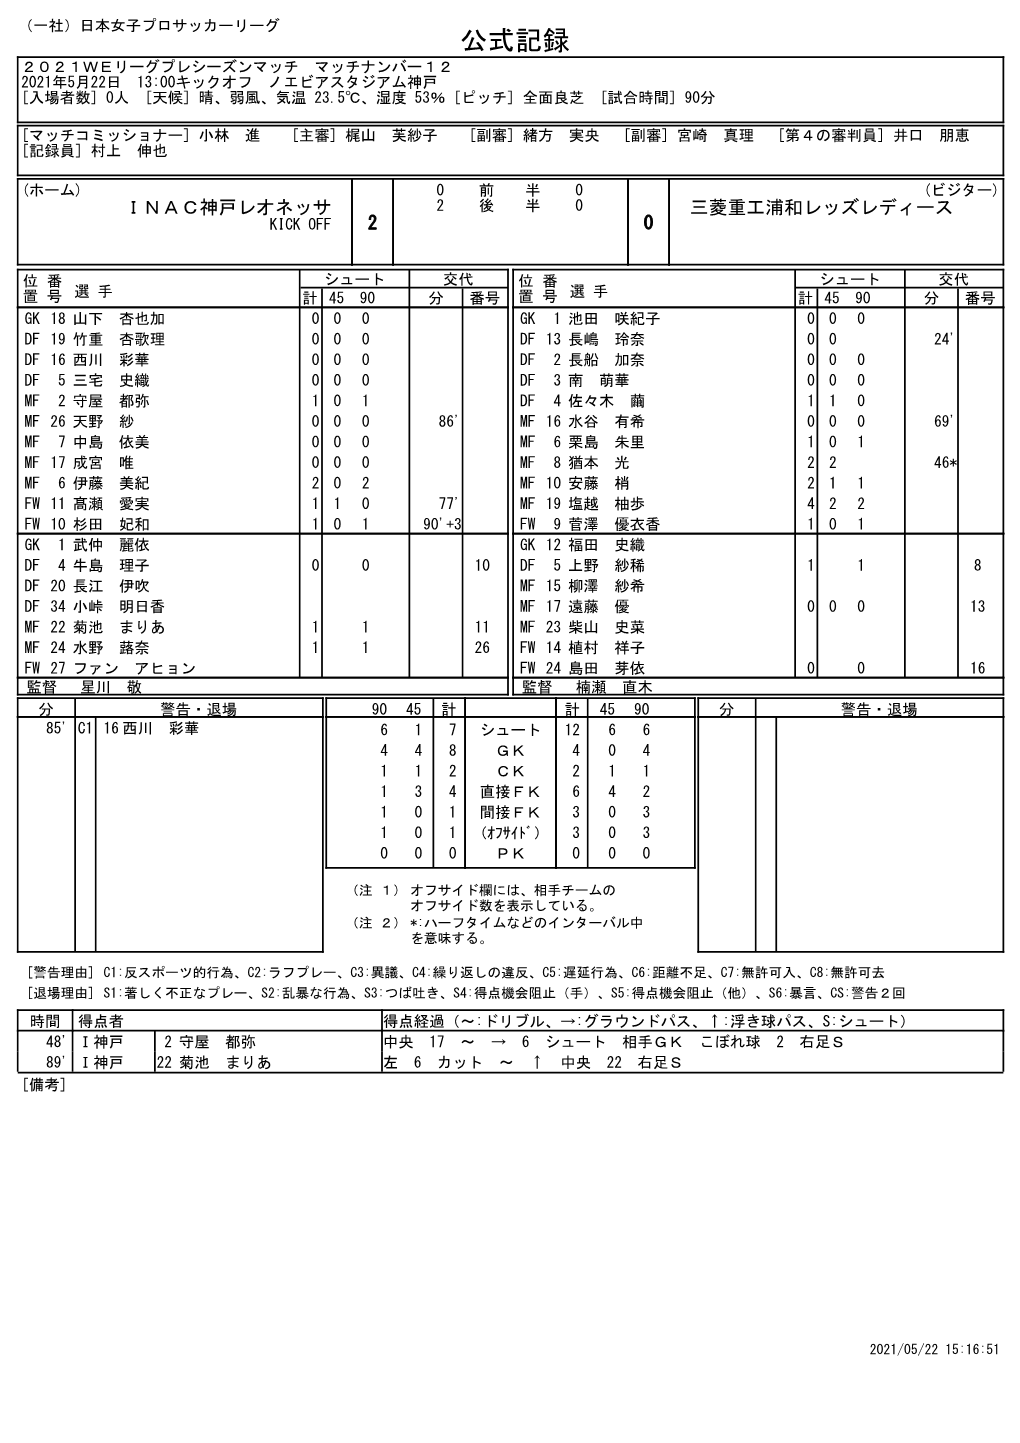 公式記録 ２０２１Ｗｅリーグプレシーズンマッチ マッチナンバー１２ 2021年5月22日 13:00キックオフ ノエビアスタジアム神戸 [入場者数] 0人 [天候] 晴、弱風、気温 23.5℃、湿度 53％ [ピッチ] 全面良芝 [試合時間] 90分